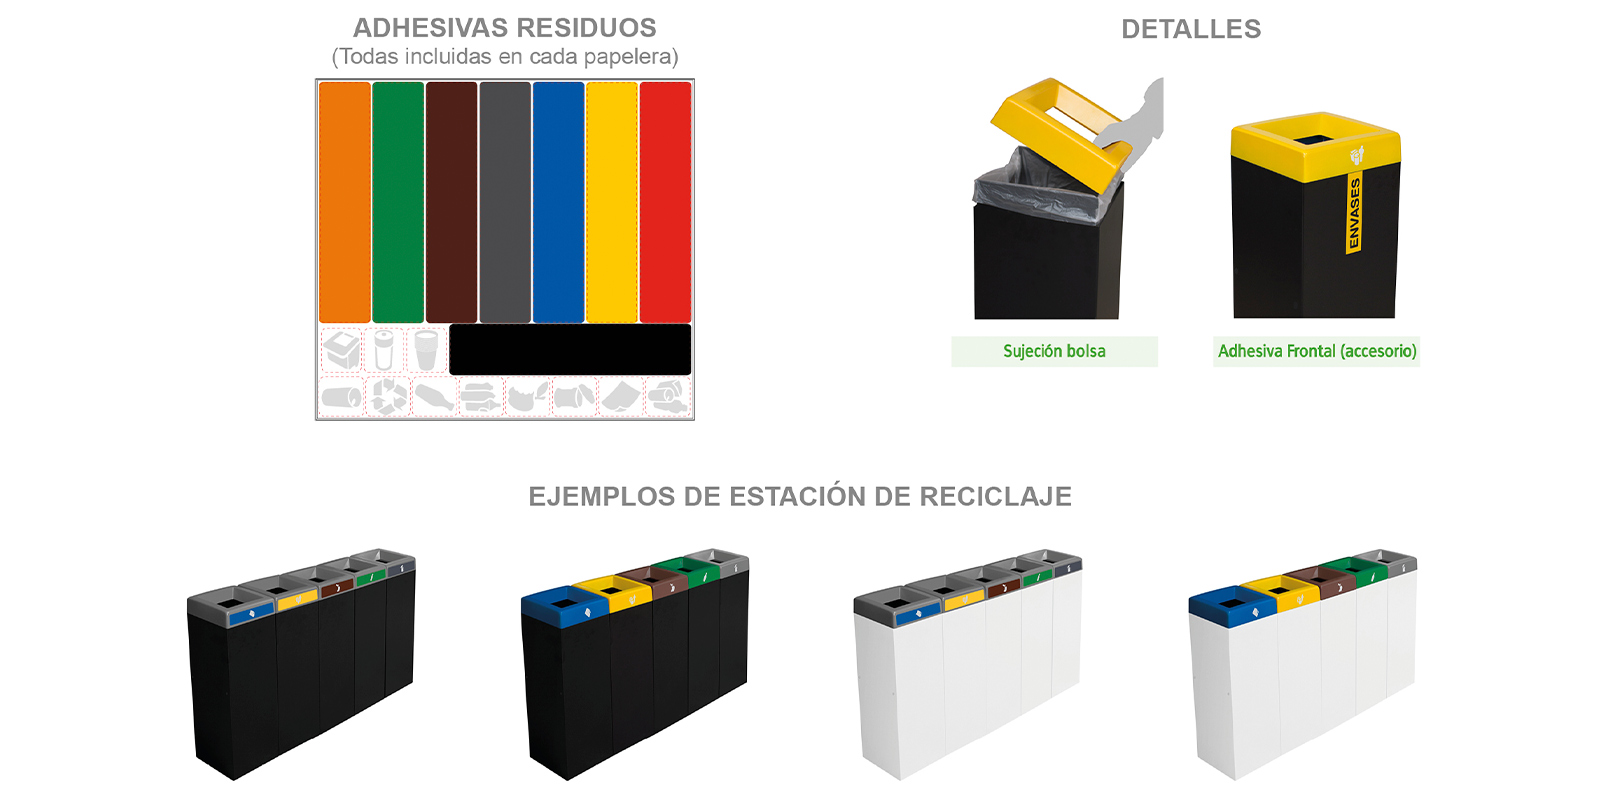 adhesivos, detalles y ejemplos de estacion de reciclaje